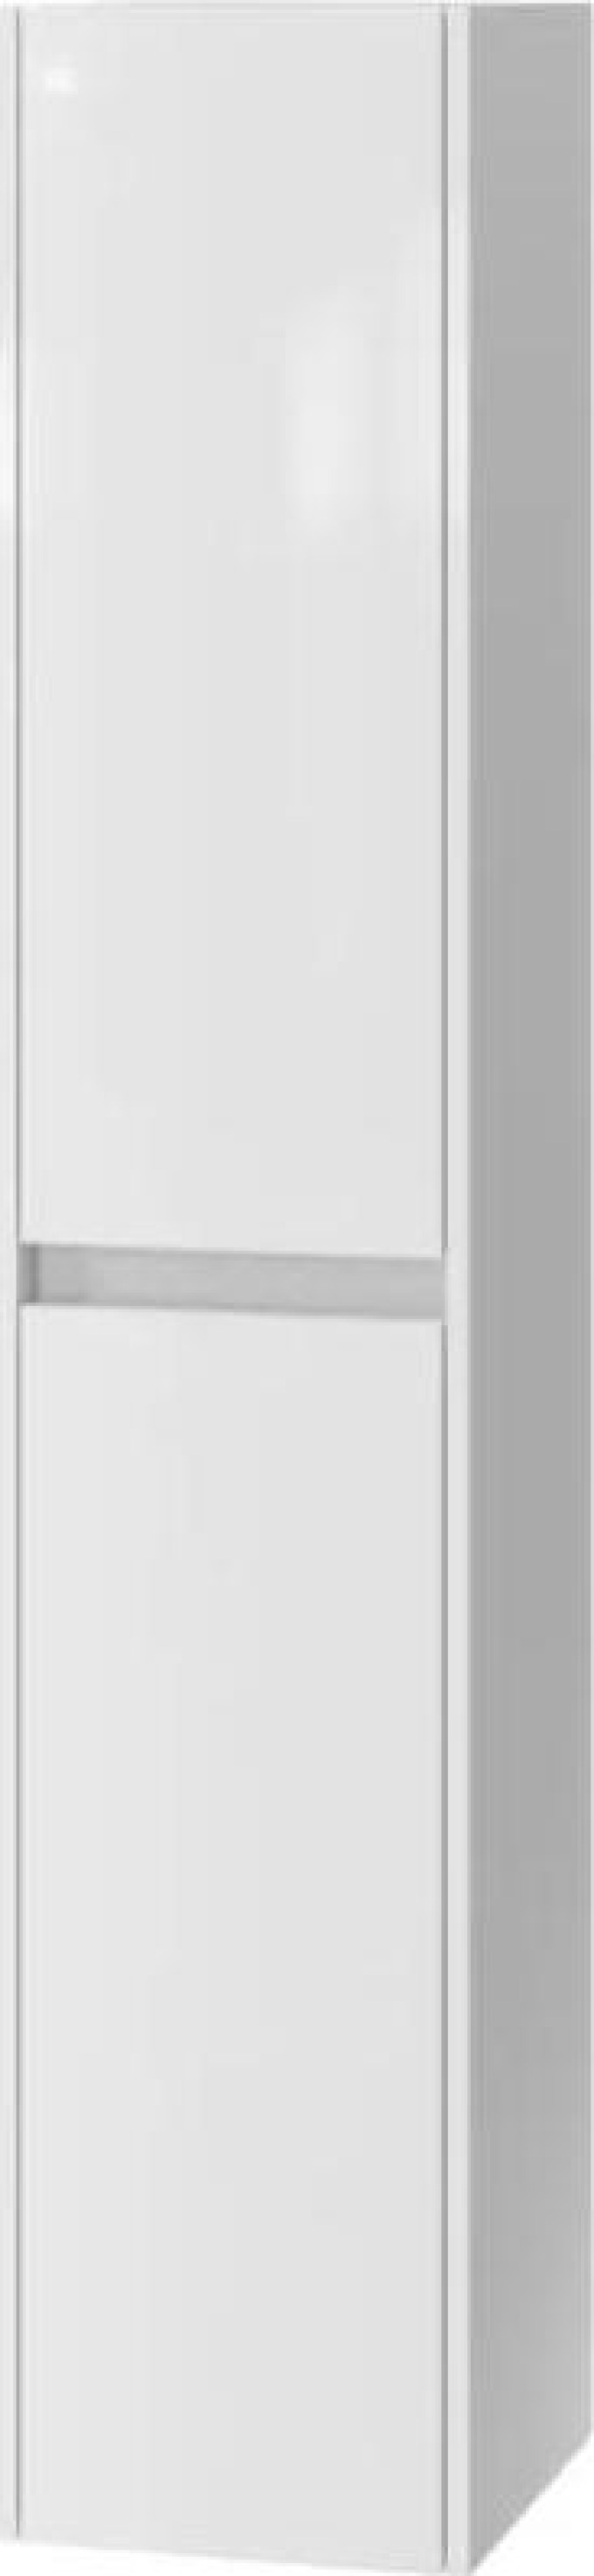 Vysoká závěsná skříňka do koupelny s bílým lesklým designovým sloupkem a 6 poličkami